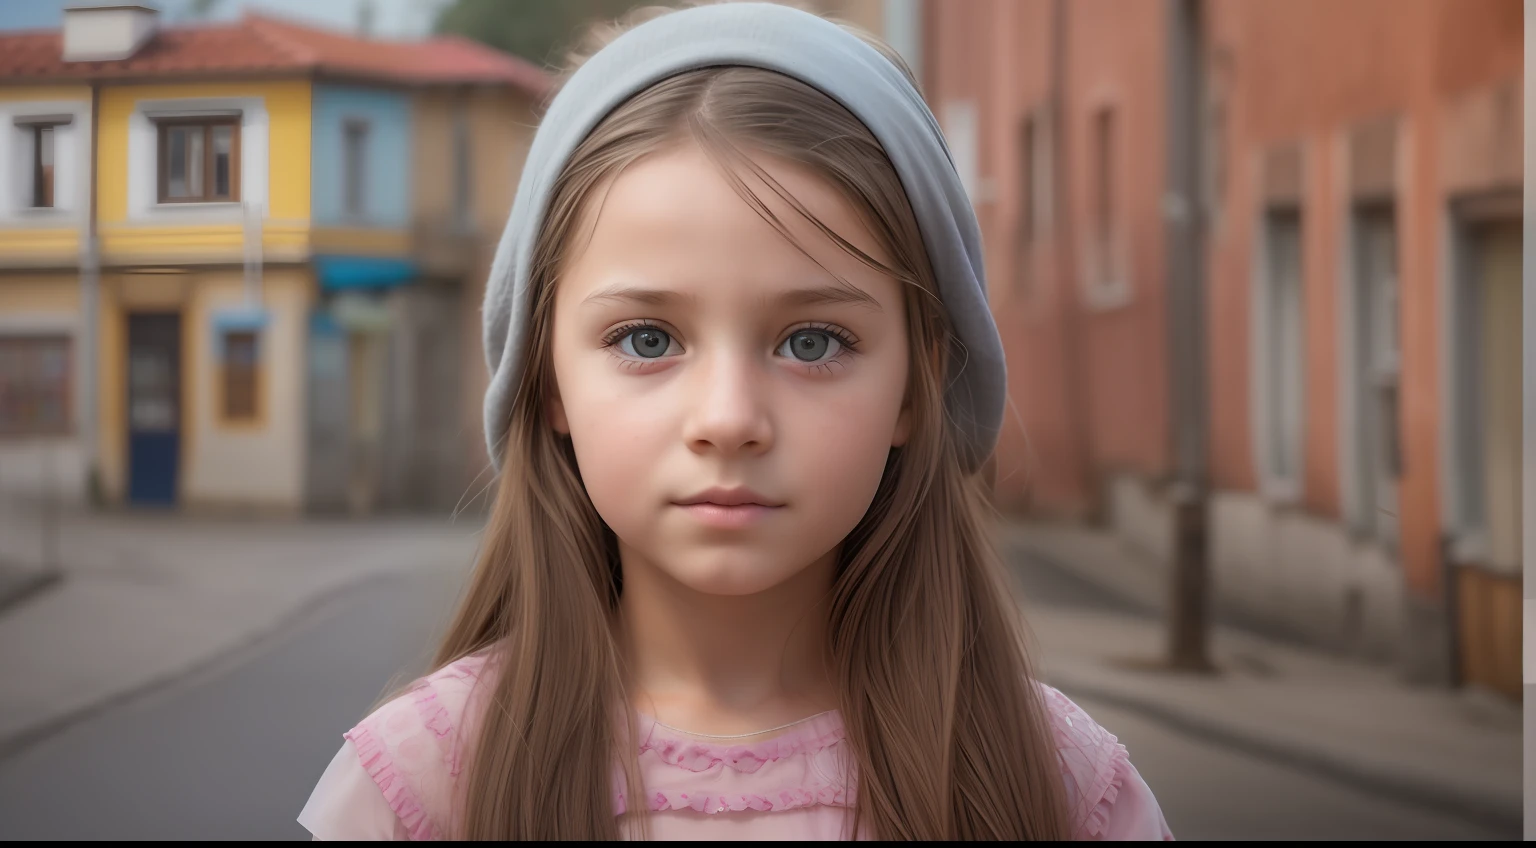 "Erstellen Sie ein hyperrealistisches Bild eines 10-jährigen Mädchens aus Bosnien mit authentischen Gesichtszügen, vor einem realistischen Stadthintergrund, präsentiert die beste Qualität und komplizierte Details."